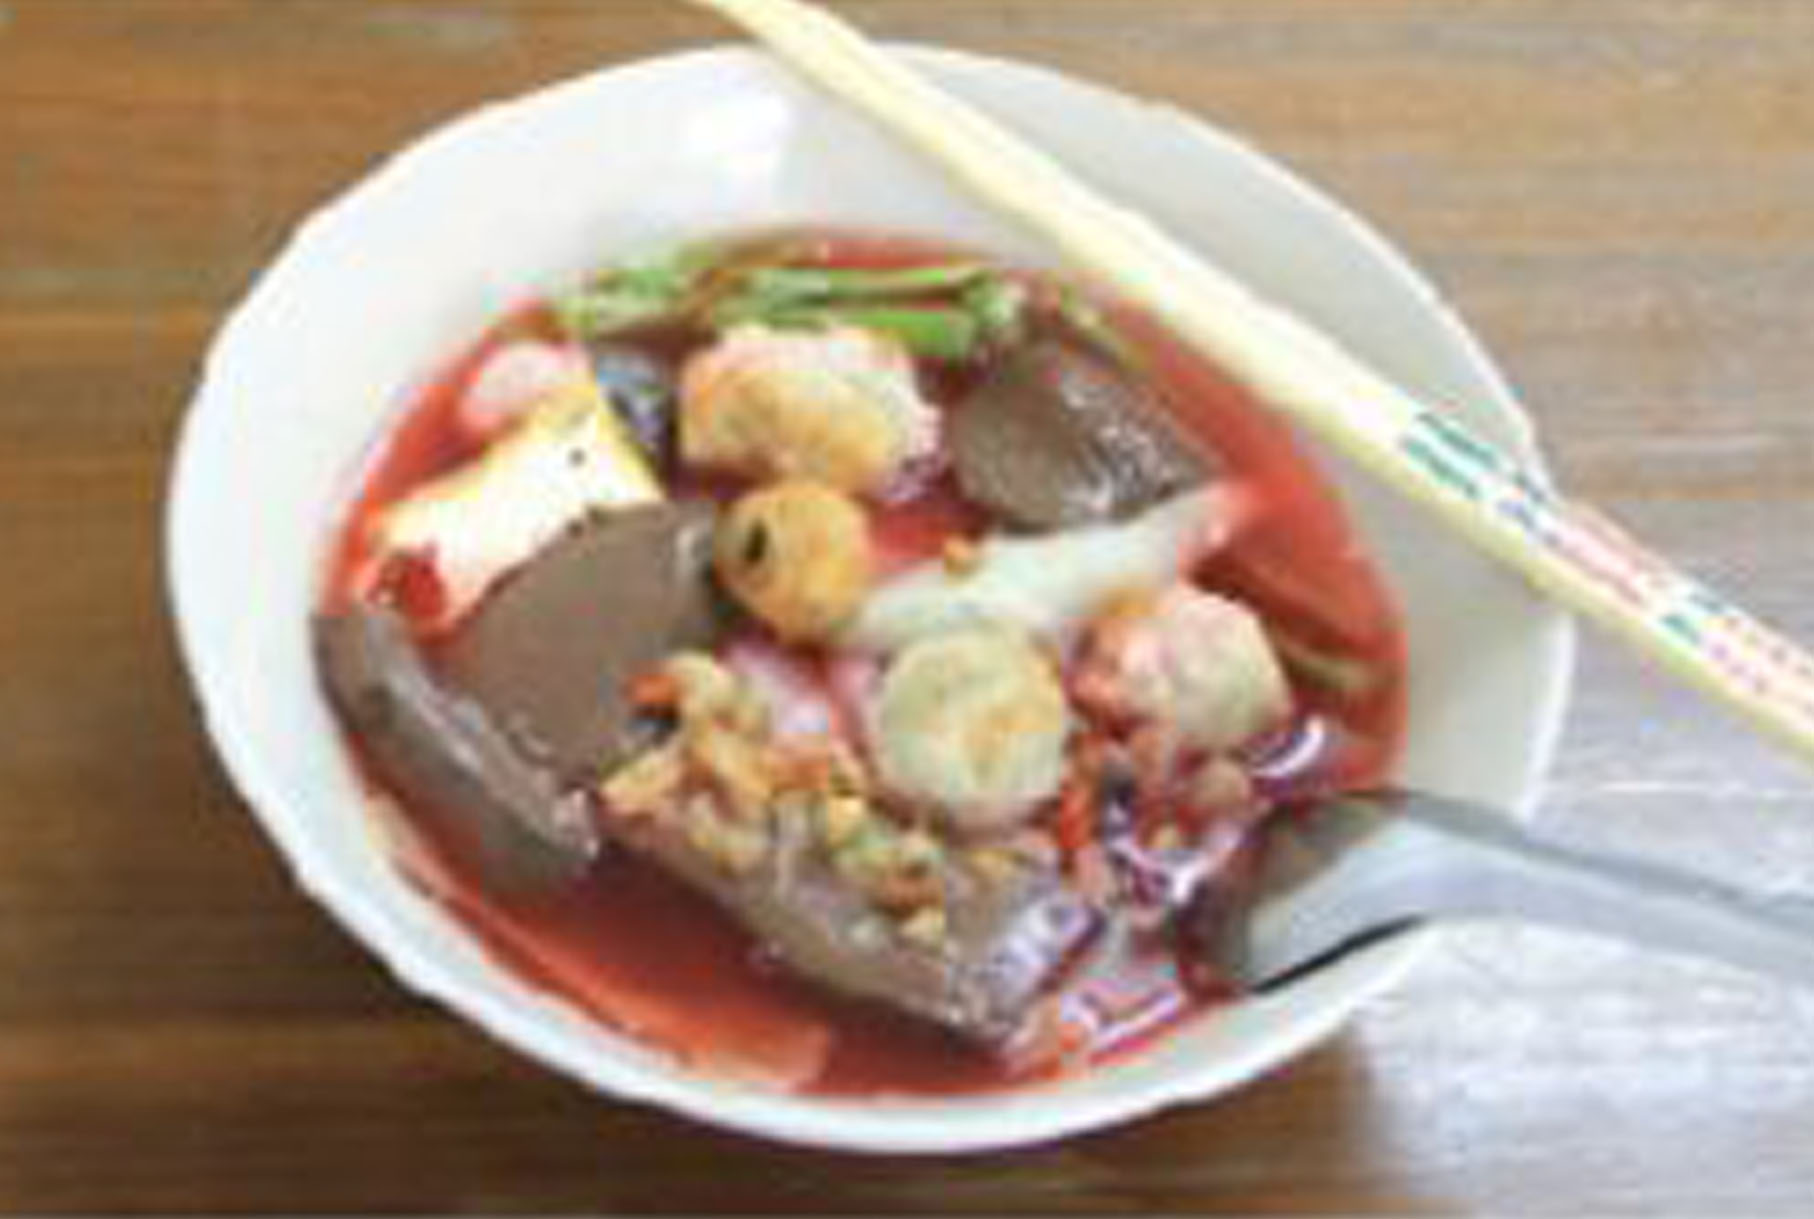 スープがピンク色のヌードルは何？ - ワイズデジタル【タイで生活する人のための情報サイト】